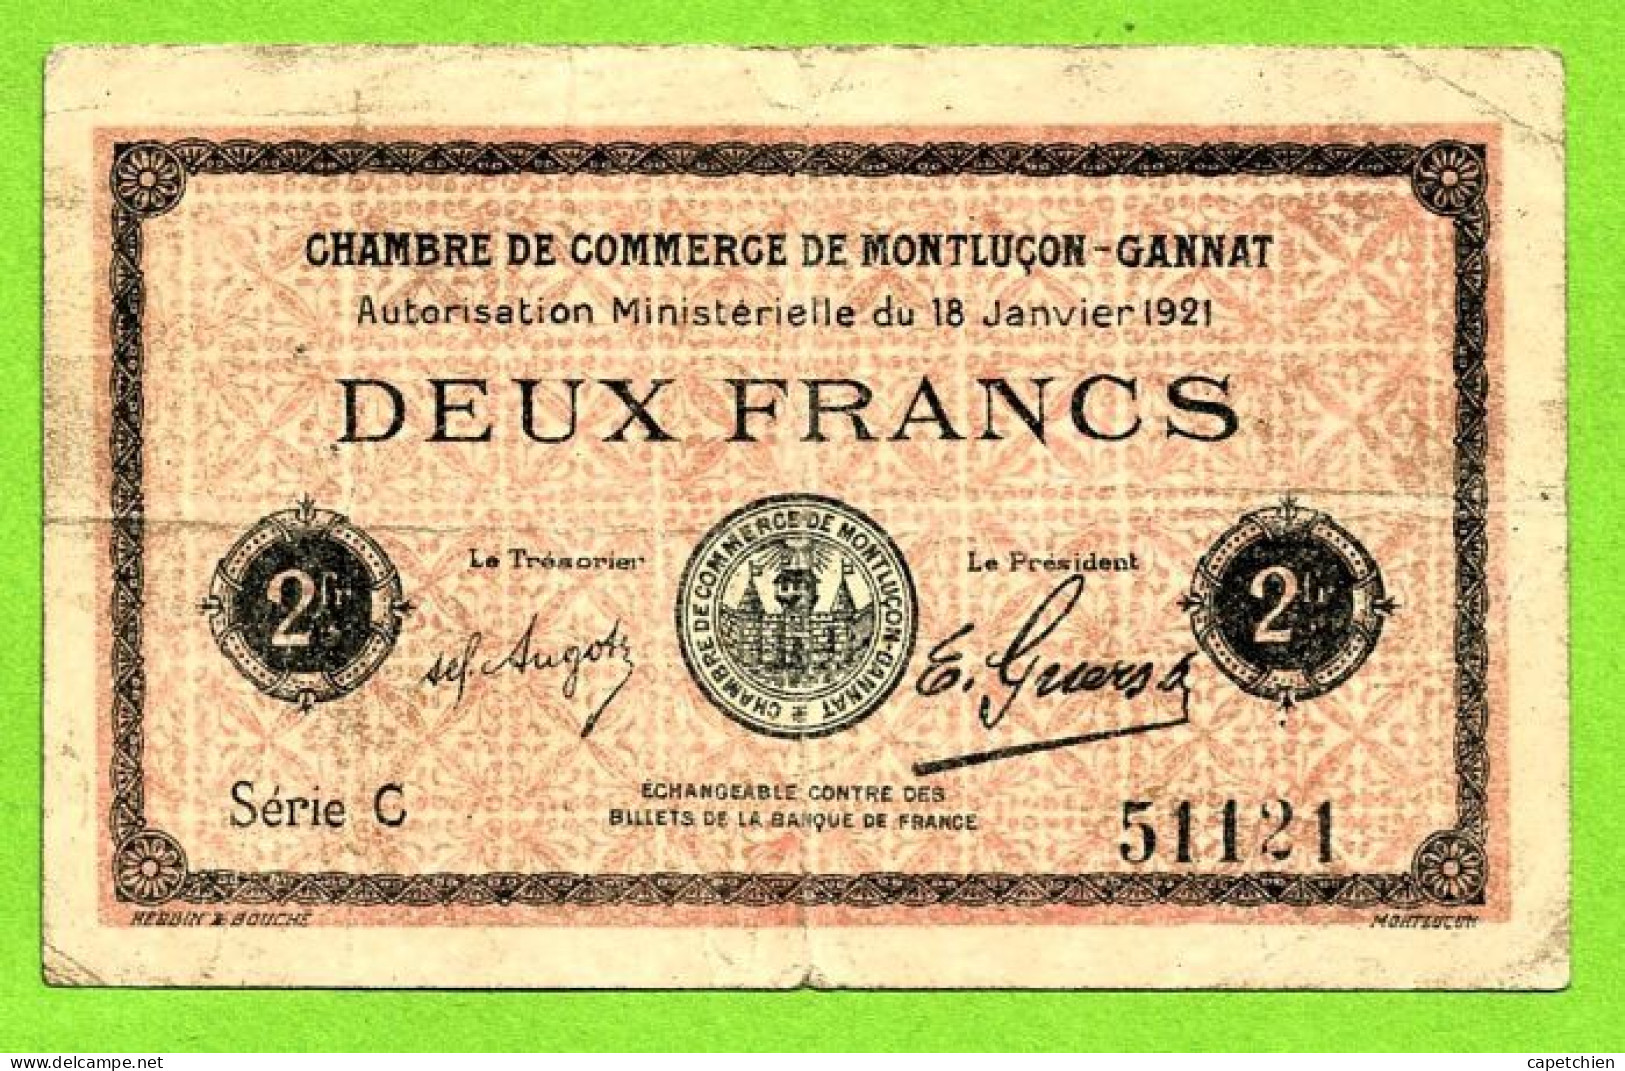 FRANCE / CHAMBRE De COMMERCE De MONTLUÇON - GANNAT / 2 FRANCS / 18 JANVIER 1921  N° 51121 / SERIE C - Cámara De Comercio